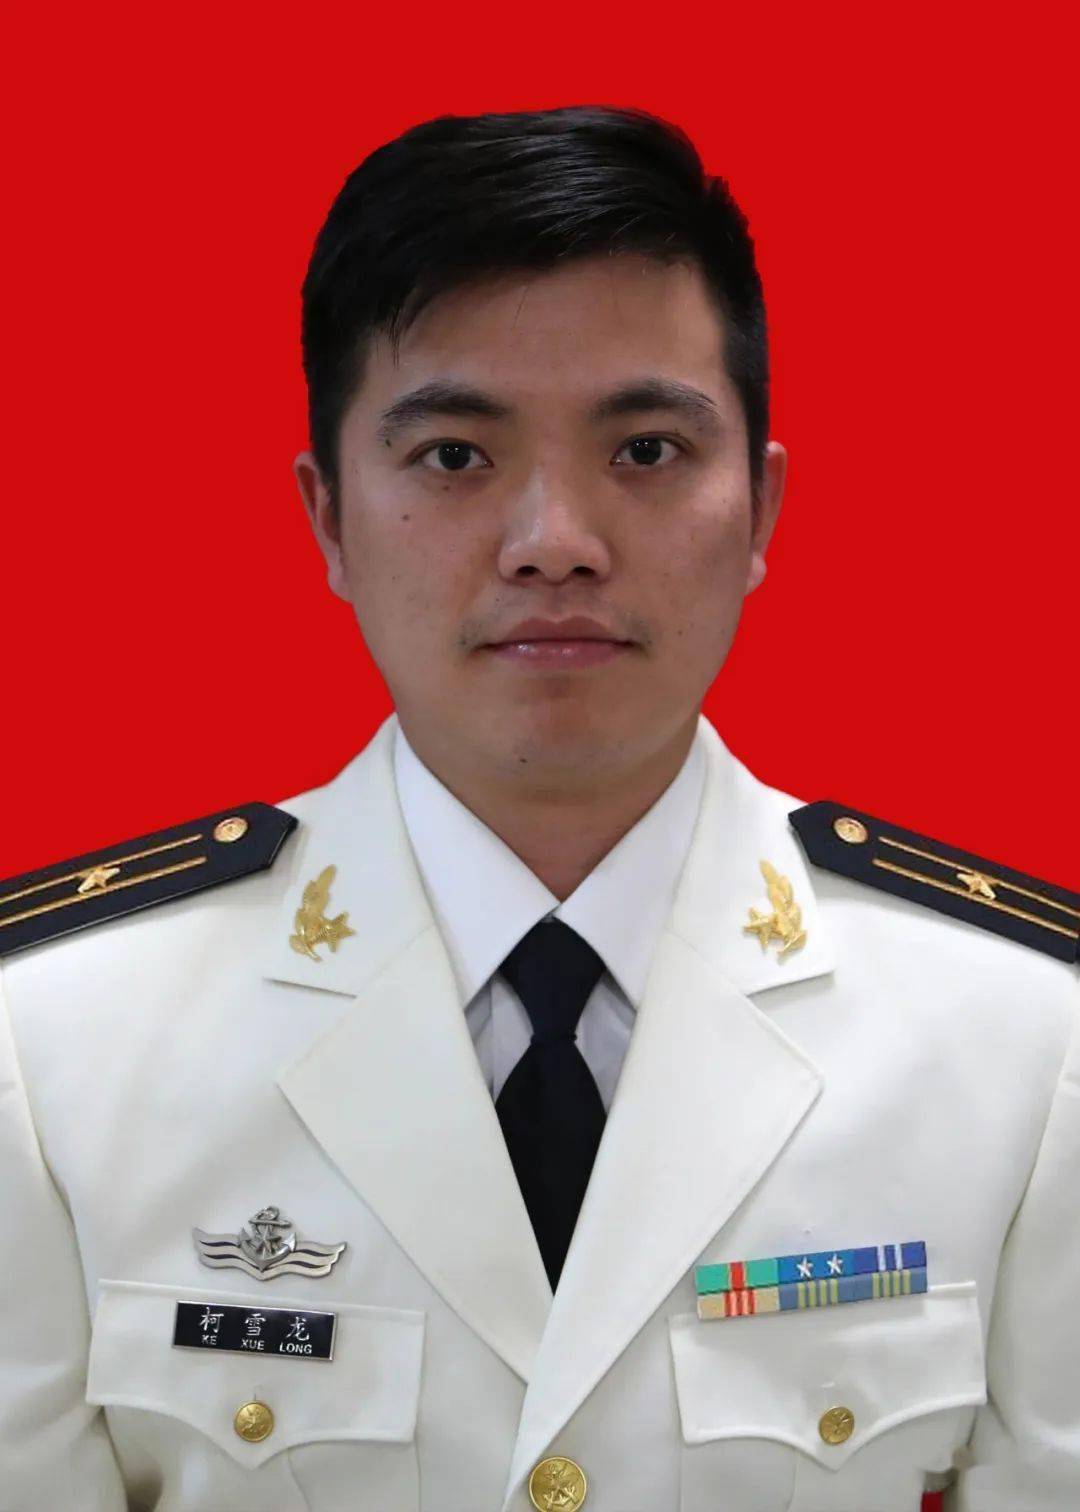 男,汉族,广西贺州人,1989年1月出生,2008年9月入伍,现任北部战区海军